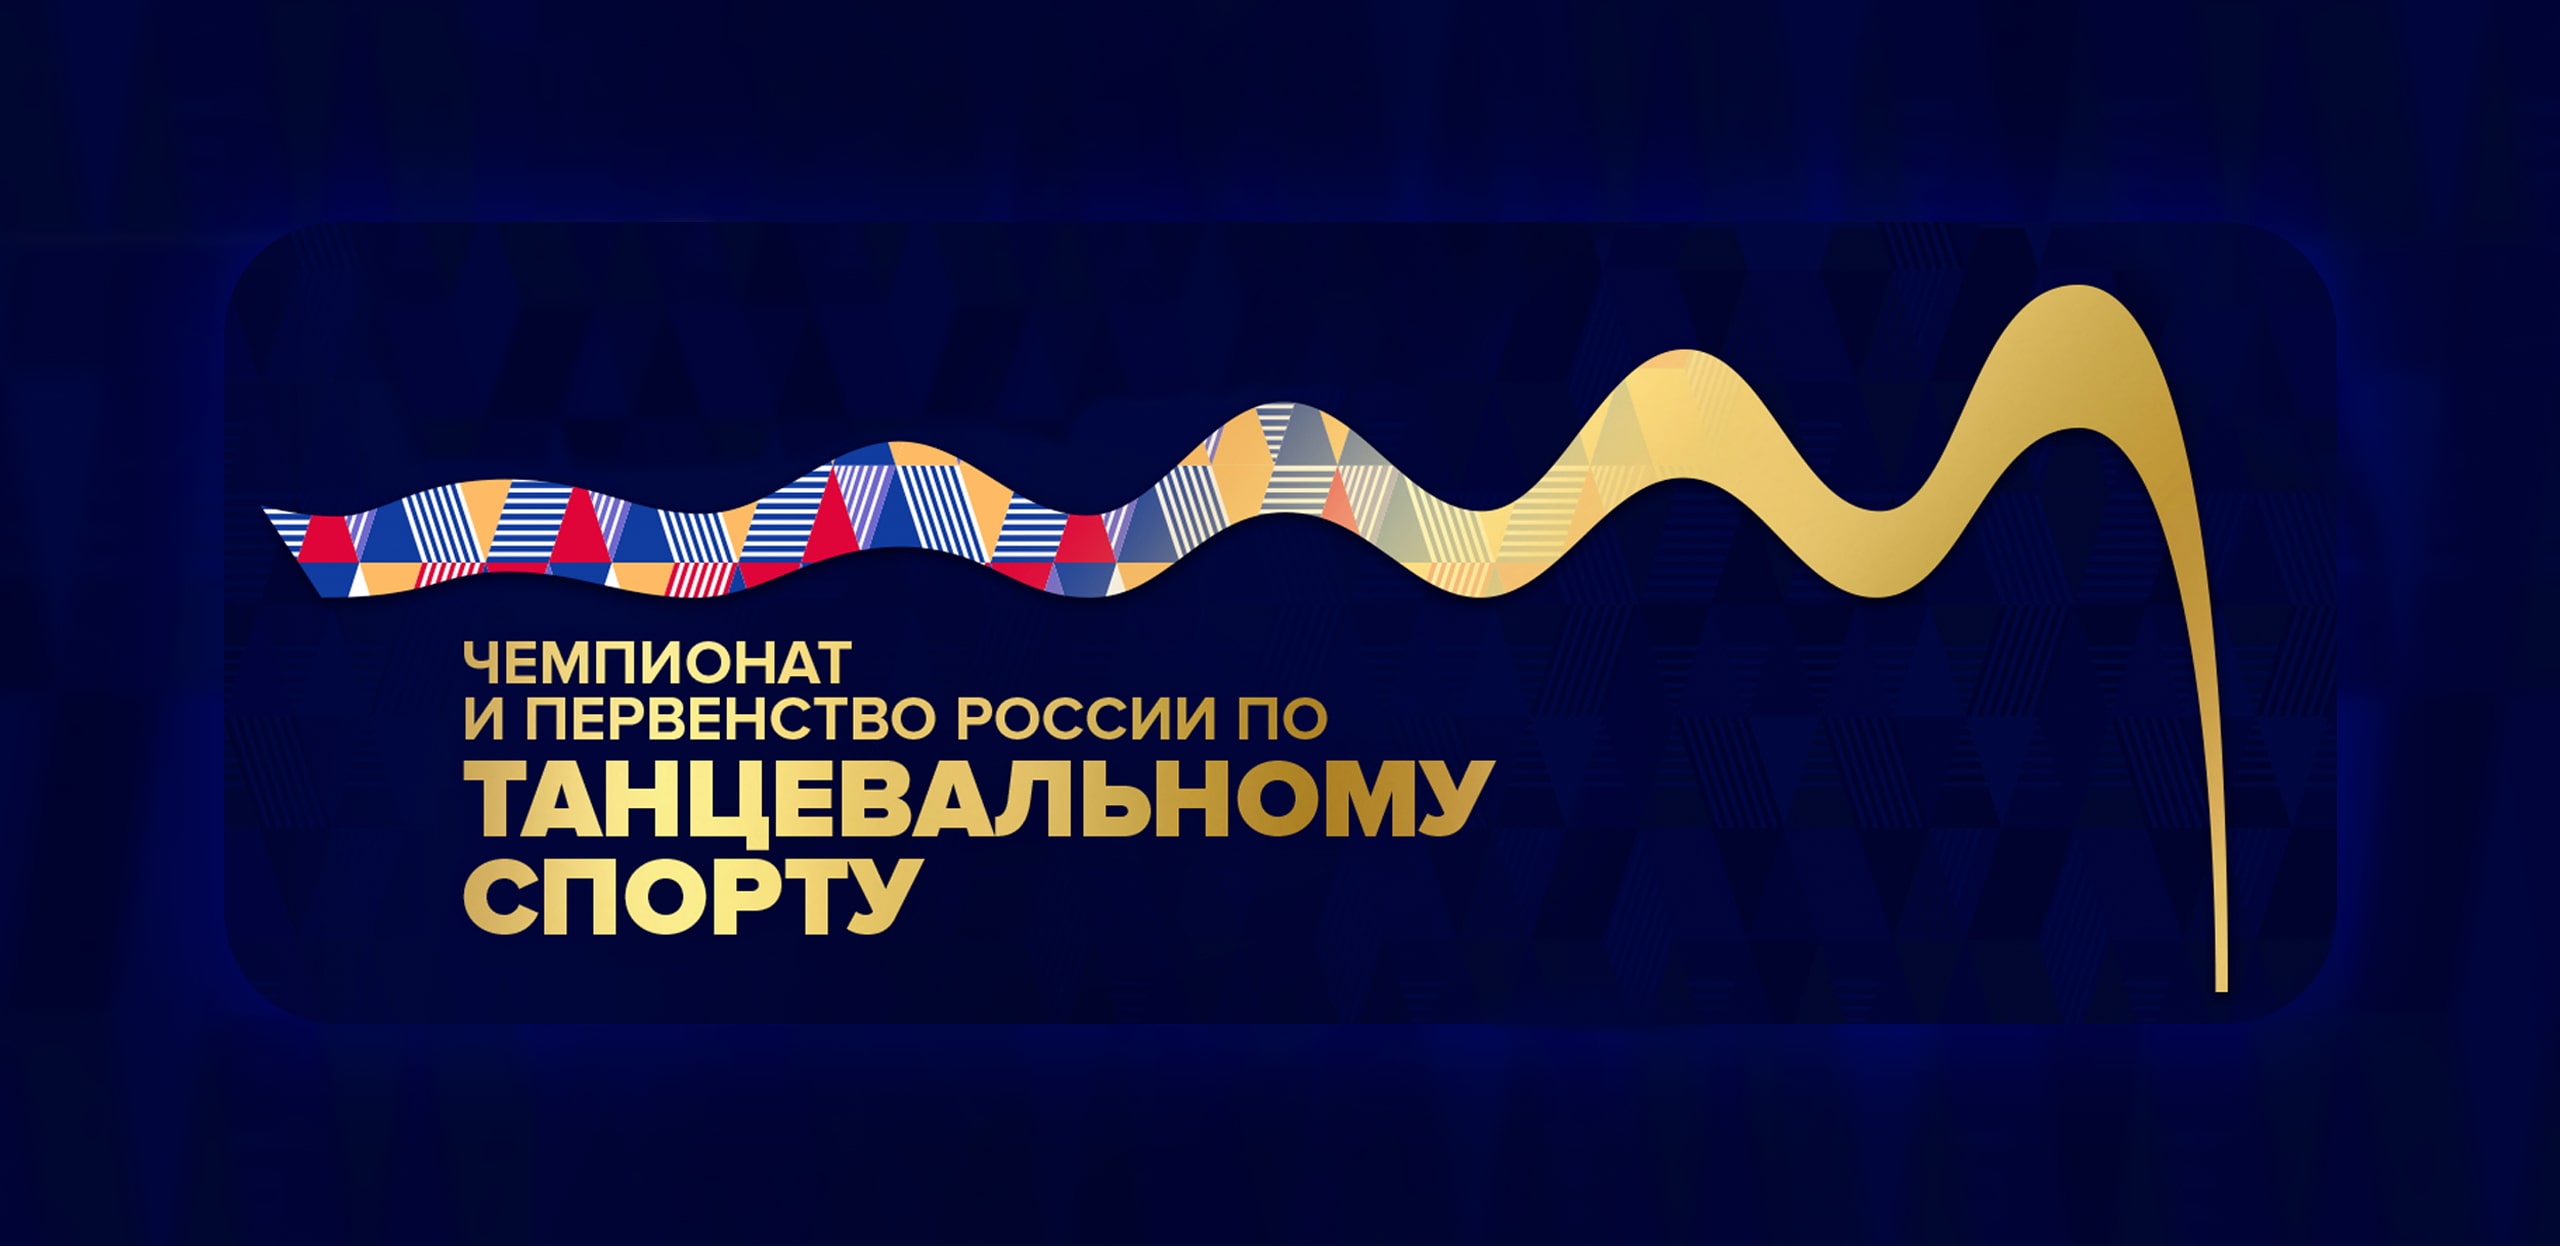 ОК и ВК бесплатно покажут чемпионат и первенство России по танцевальному спорту